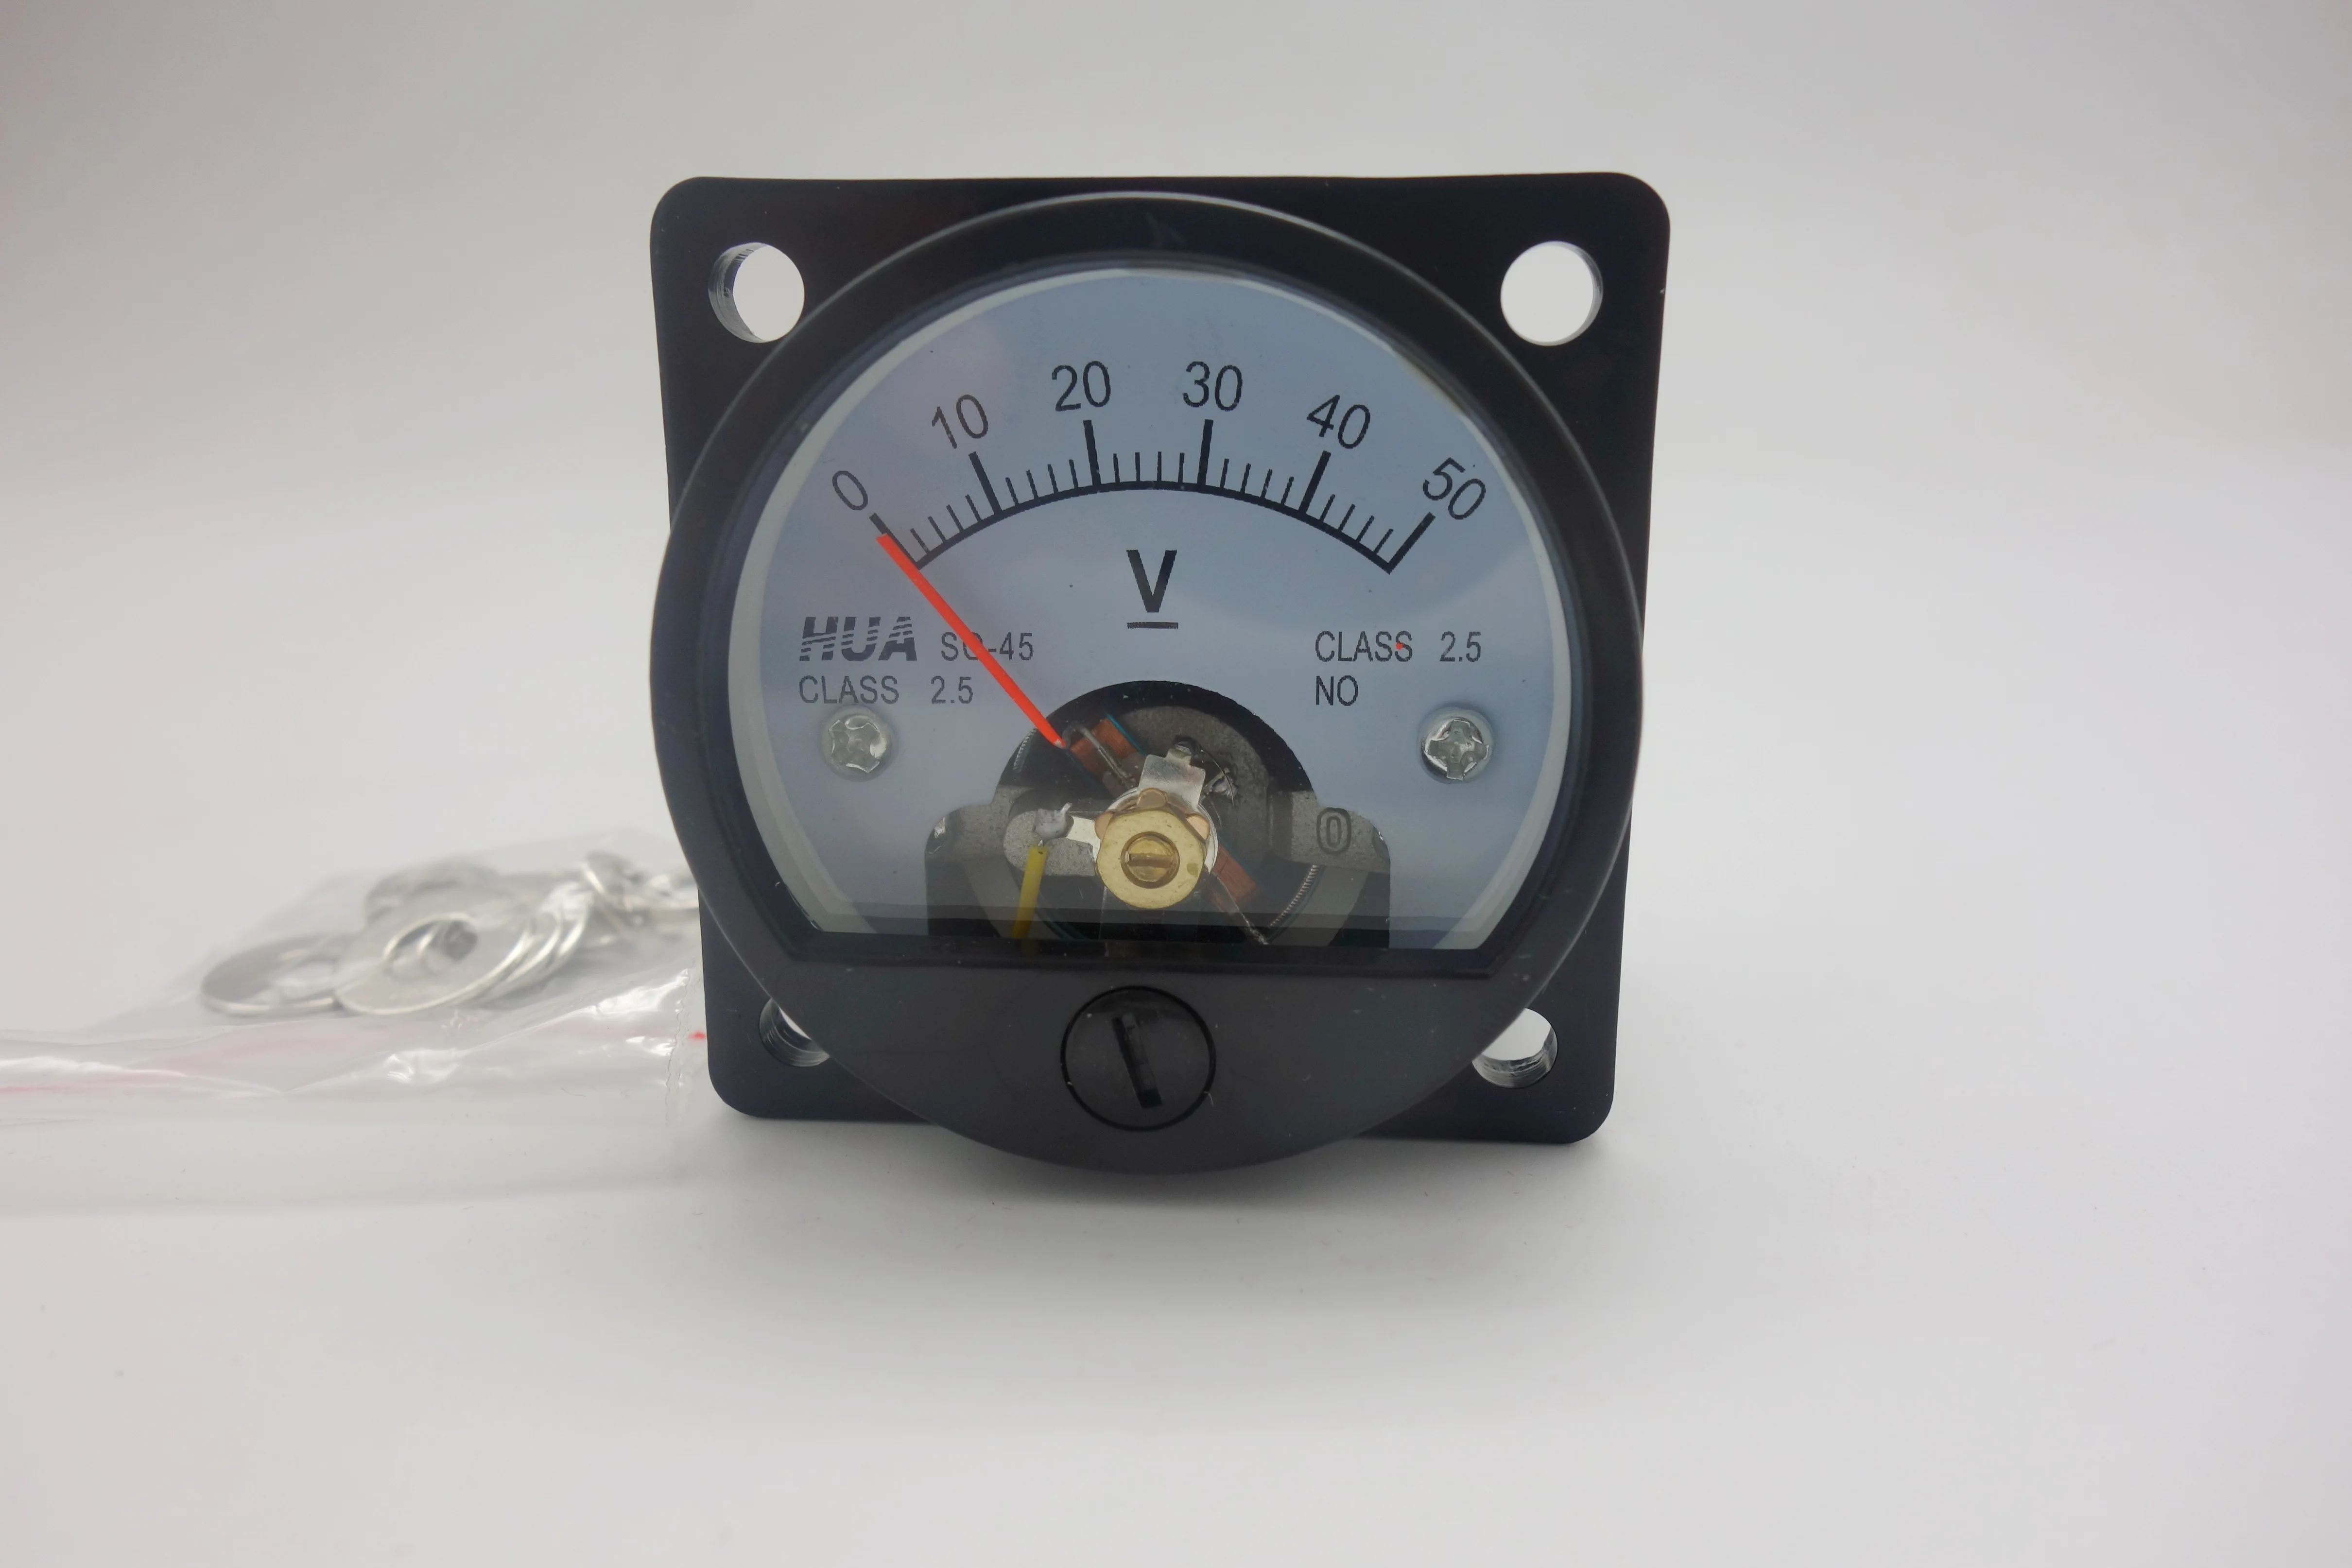 Аналоговый вольтметр SO45 аналоговый измеритель напряжения постоянный ток 0 - 50 В